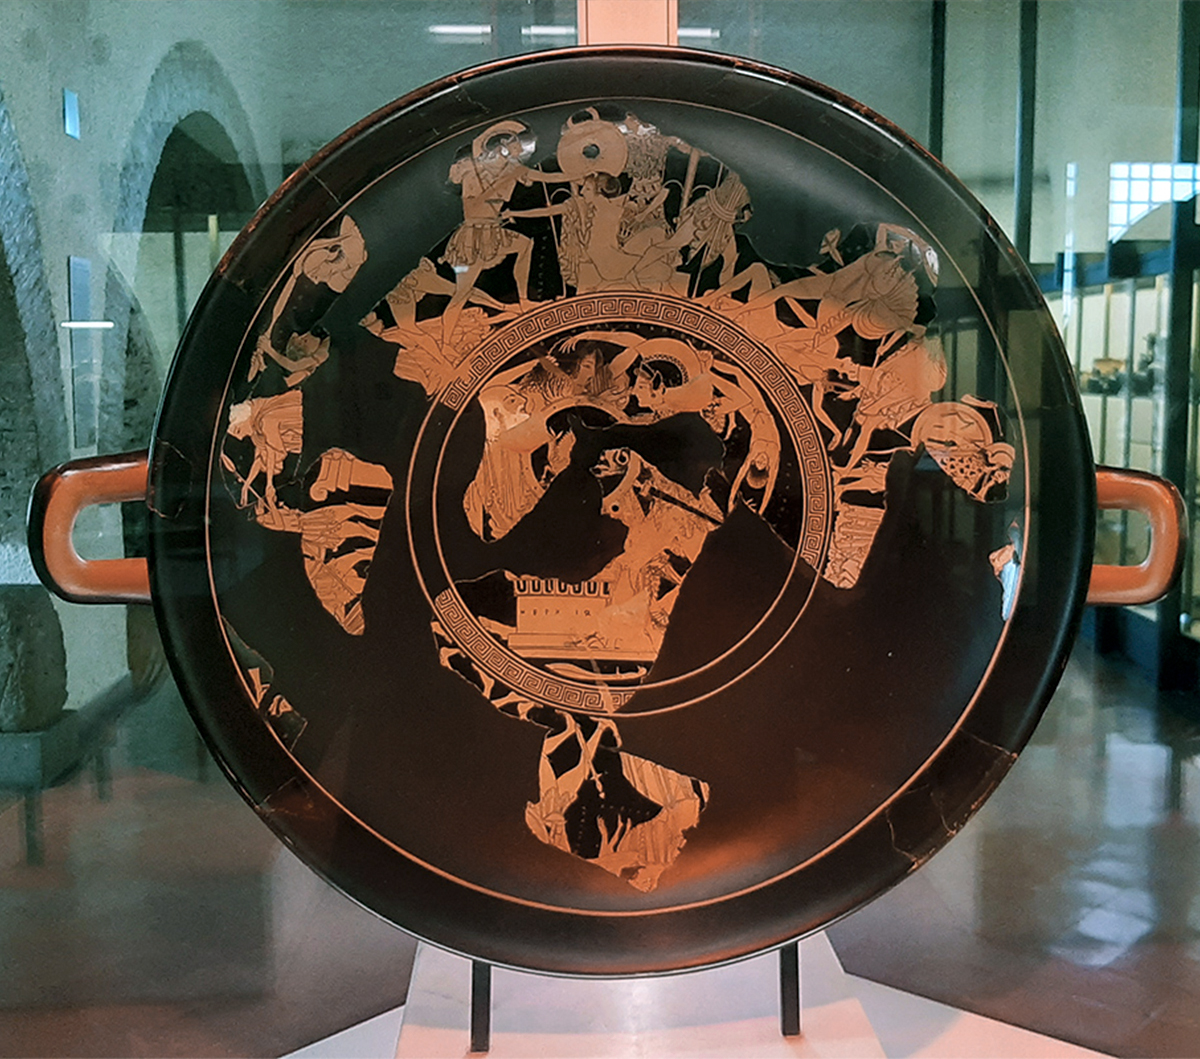 La Kylix di Eufronio - Museo Nazionale Archeologico Cerite (Cerveteri) - Foto di Sailko Wikimedia CC BY 3.0